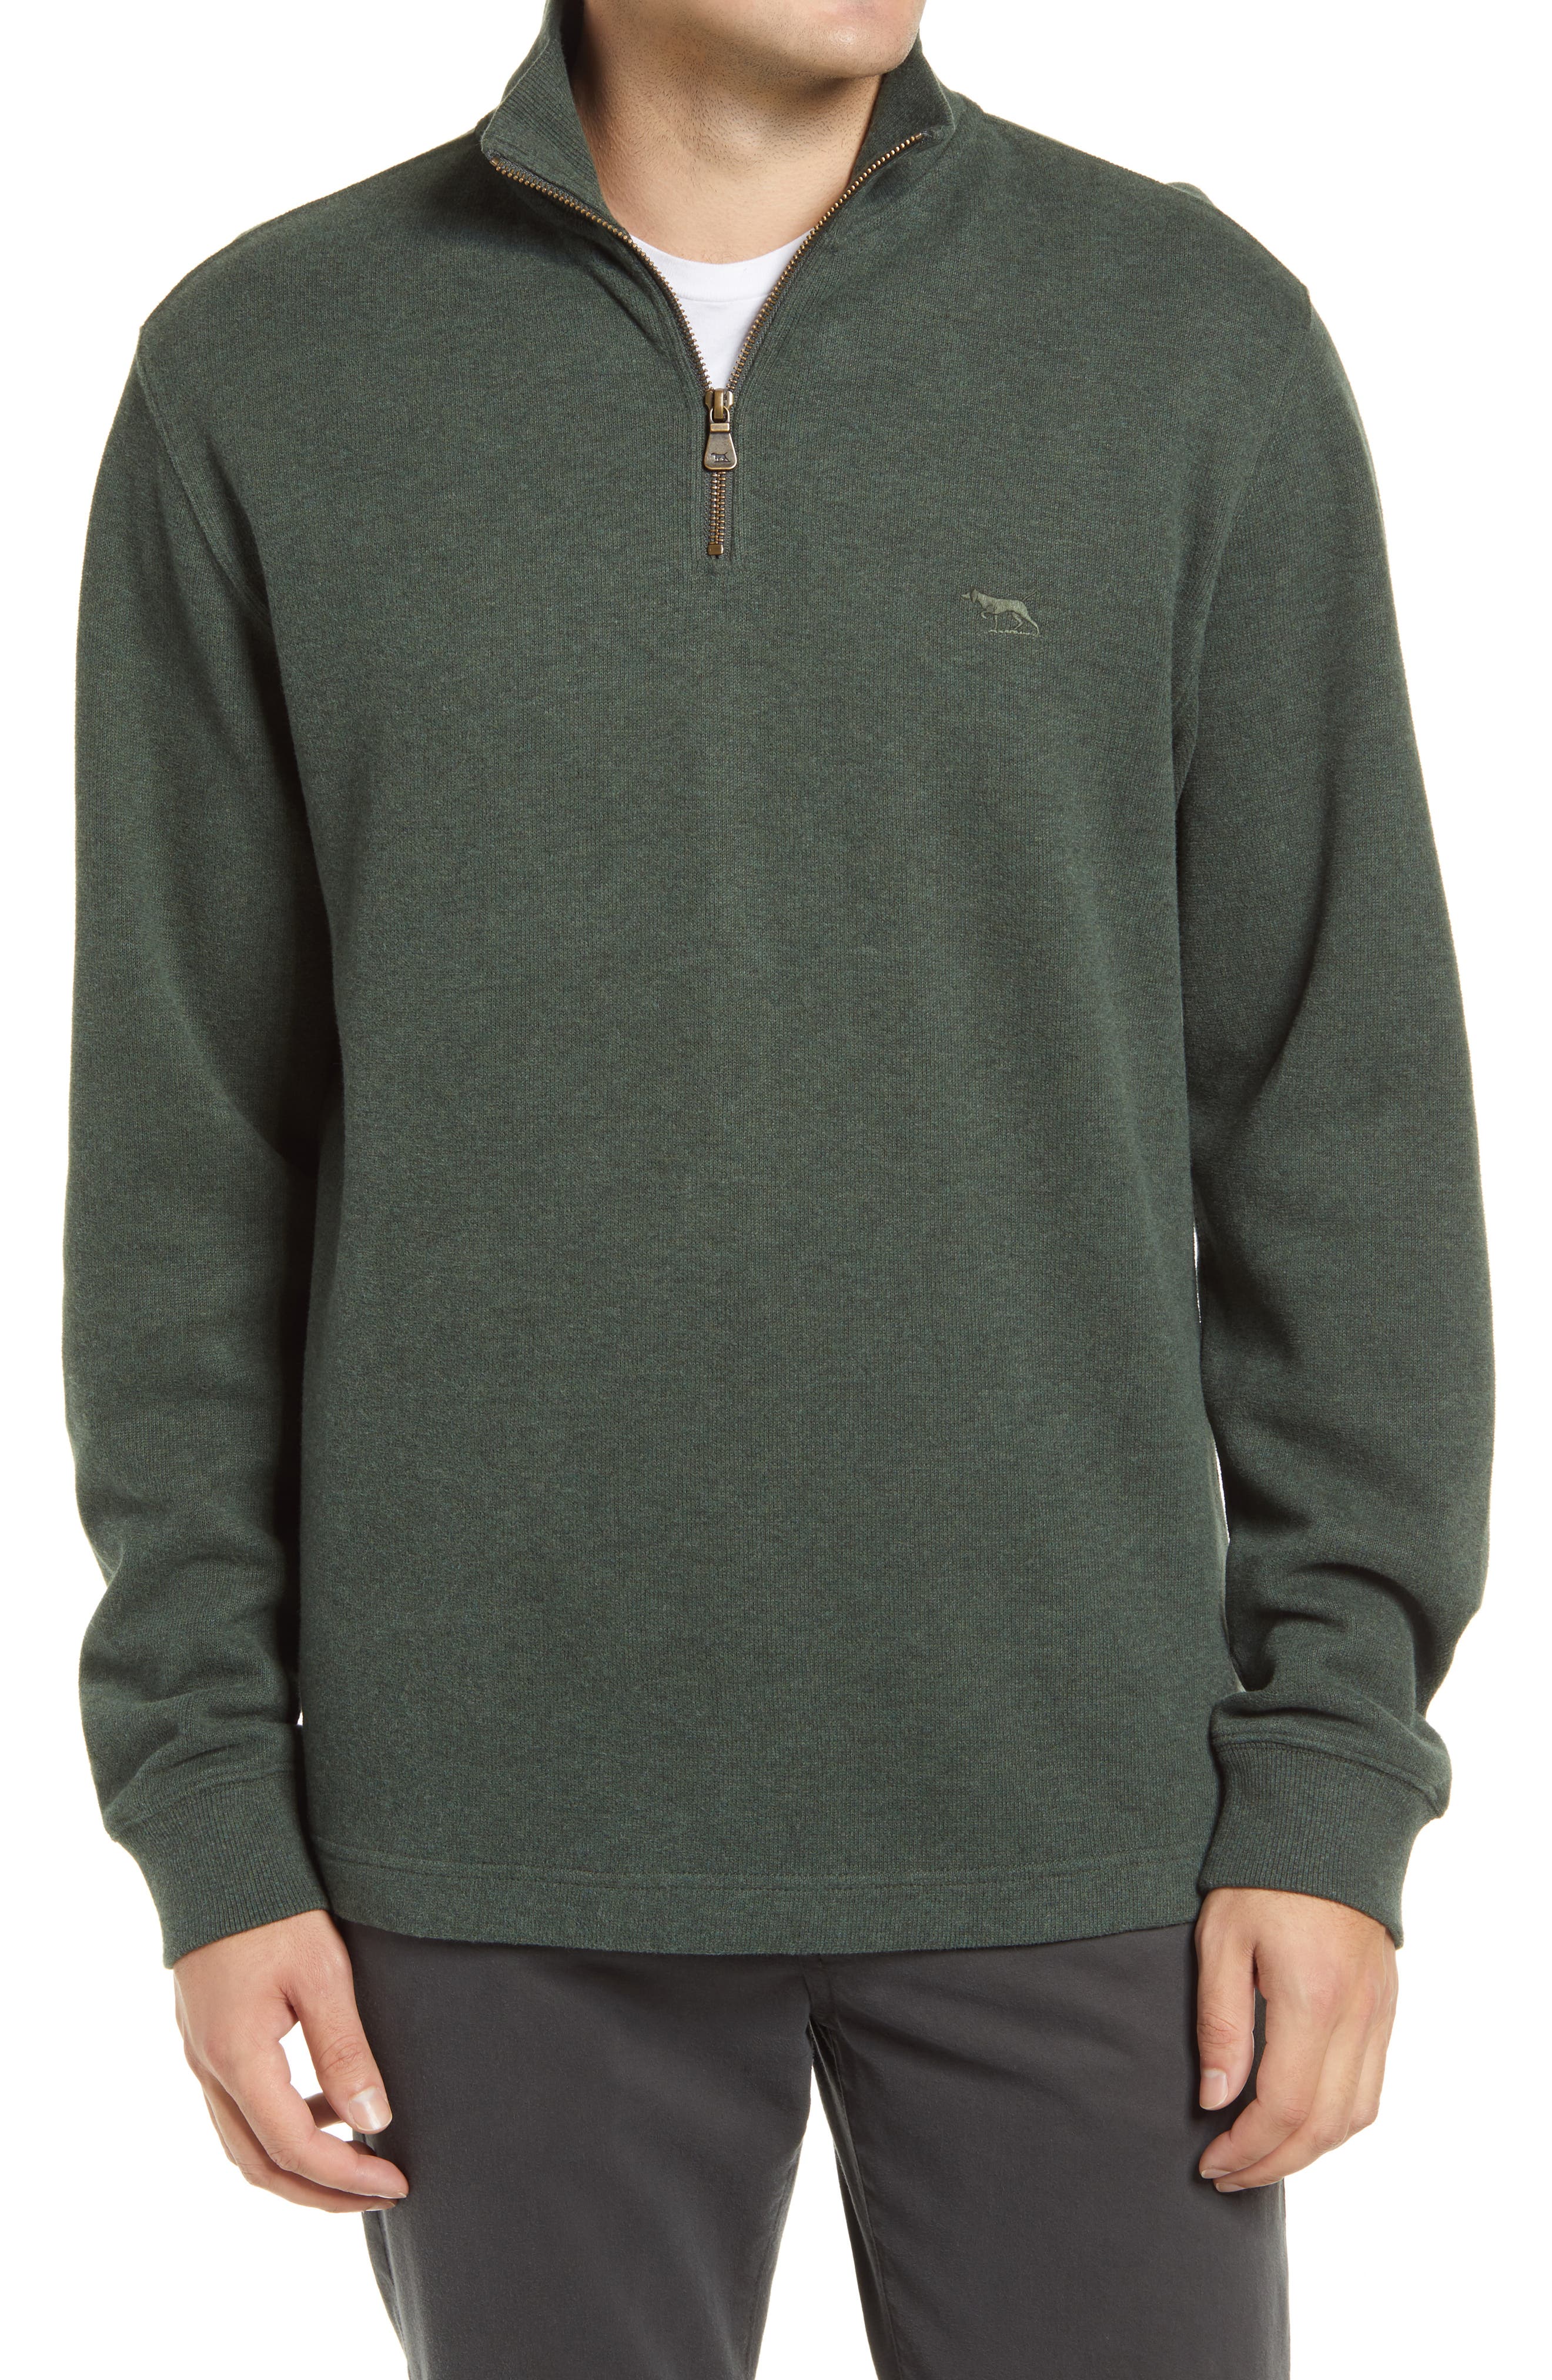 discount 56% Black L Jack & Jones sweatshirt MEN FASHION Jumpers & Sweatshirts Zip 